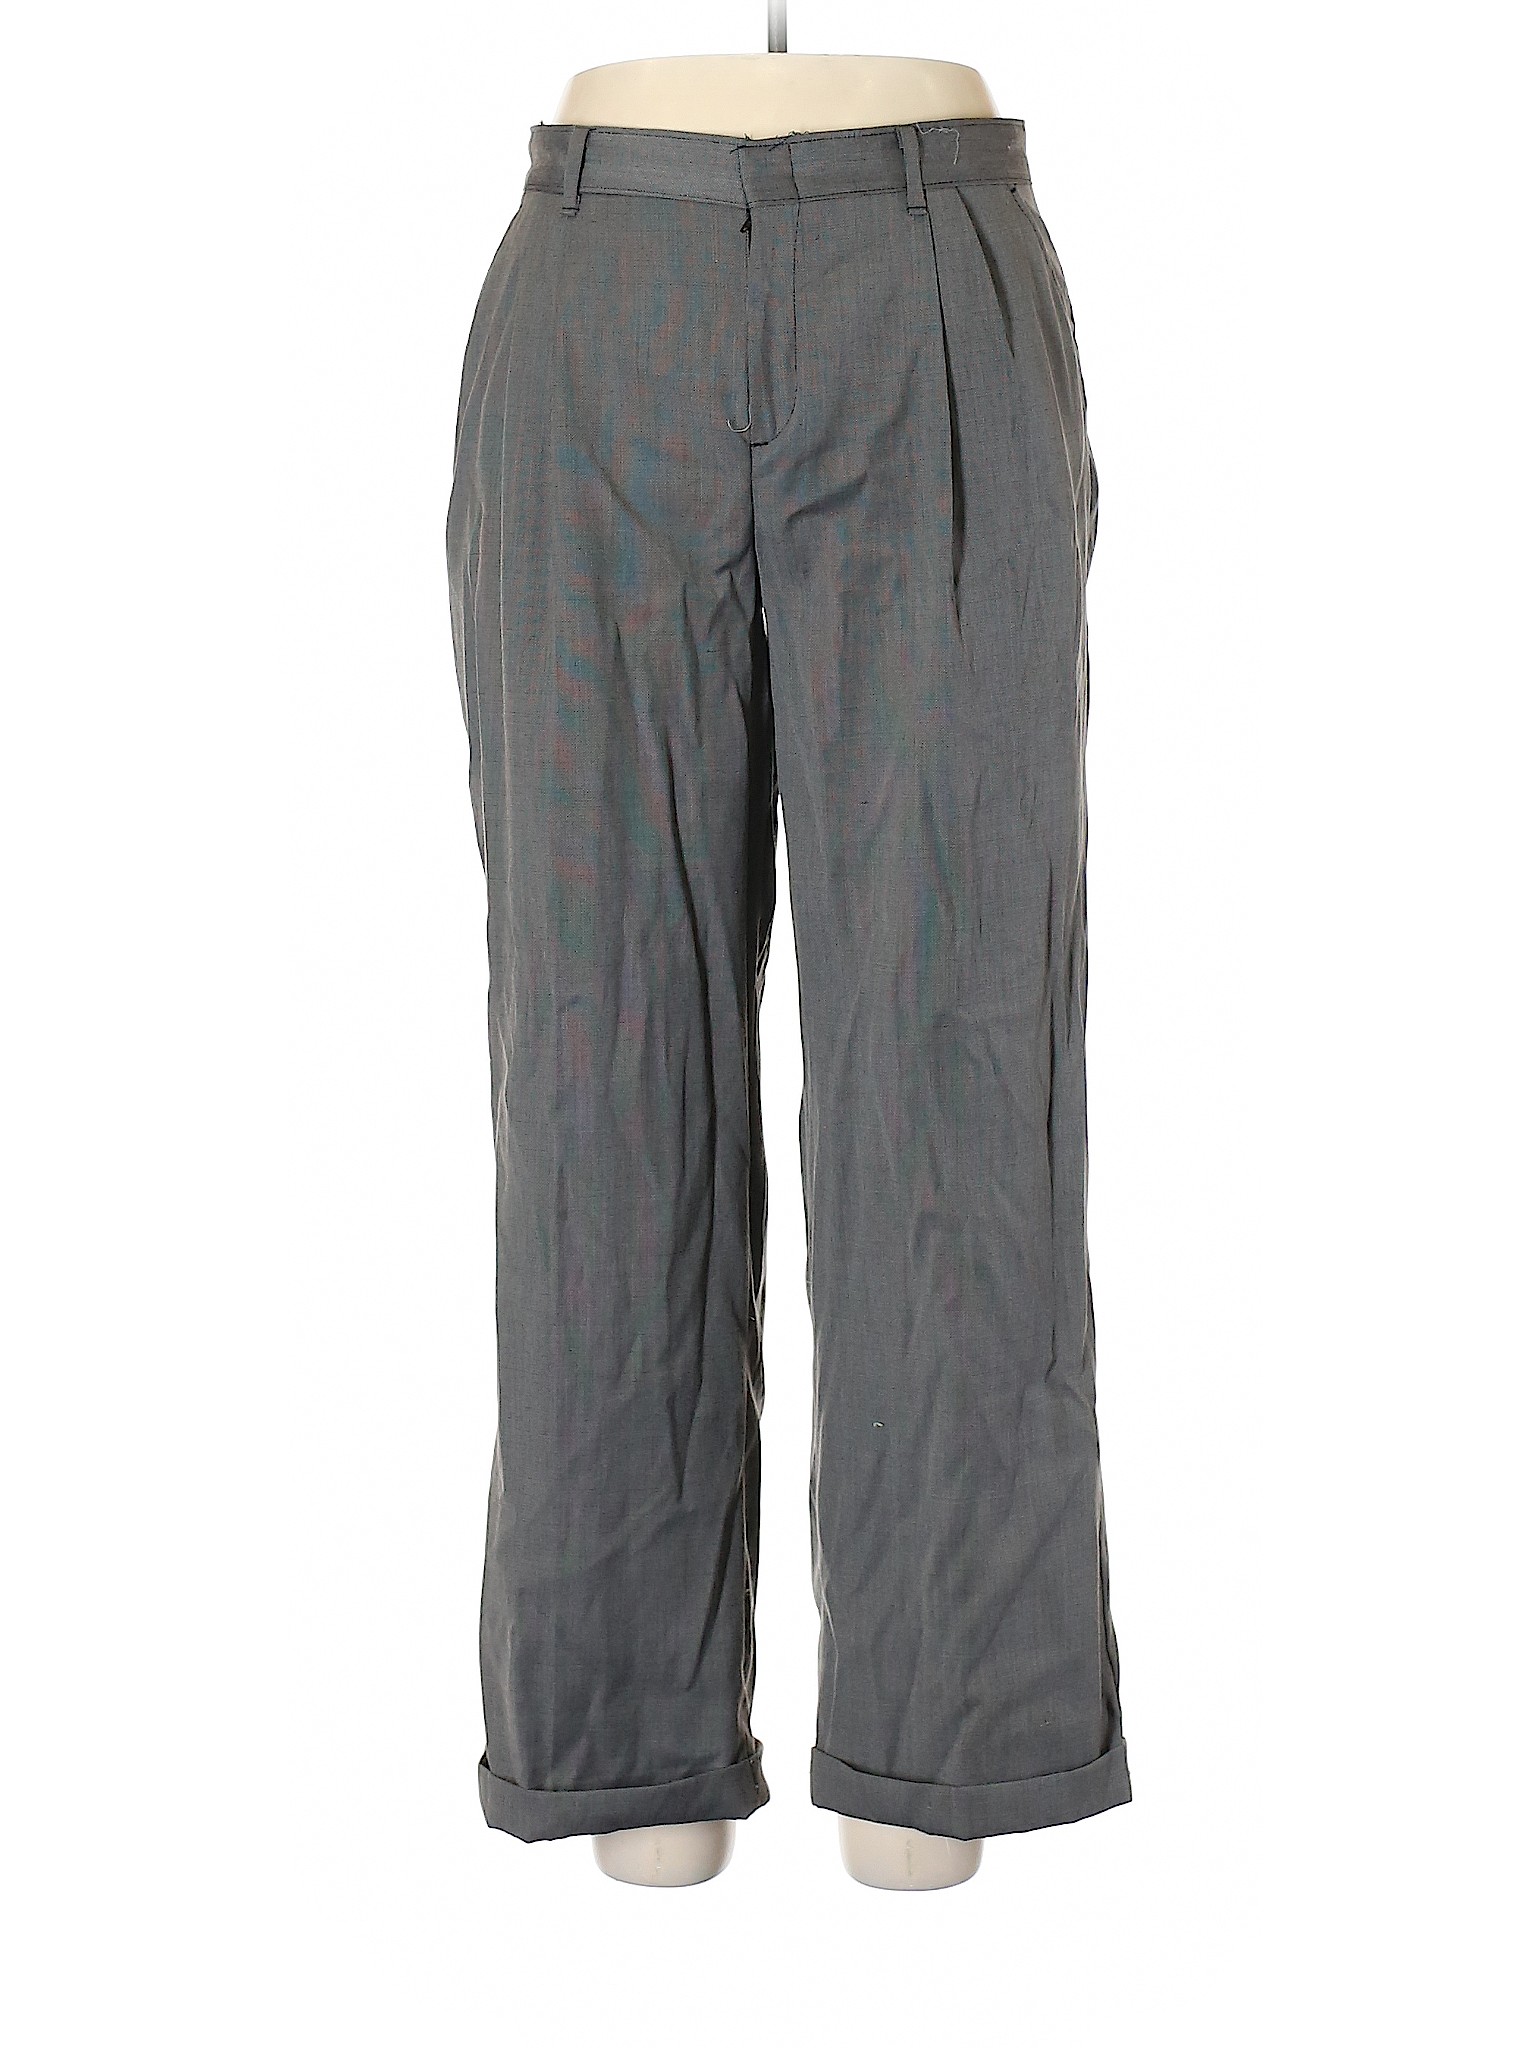 George Boys Gray Dress Pants 18 Husky | eBay